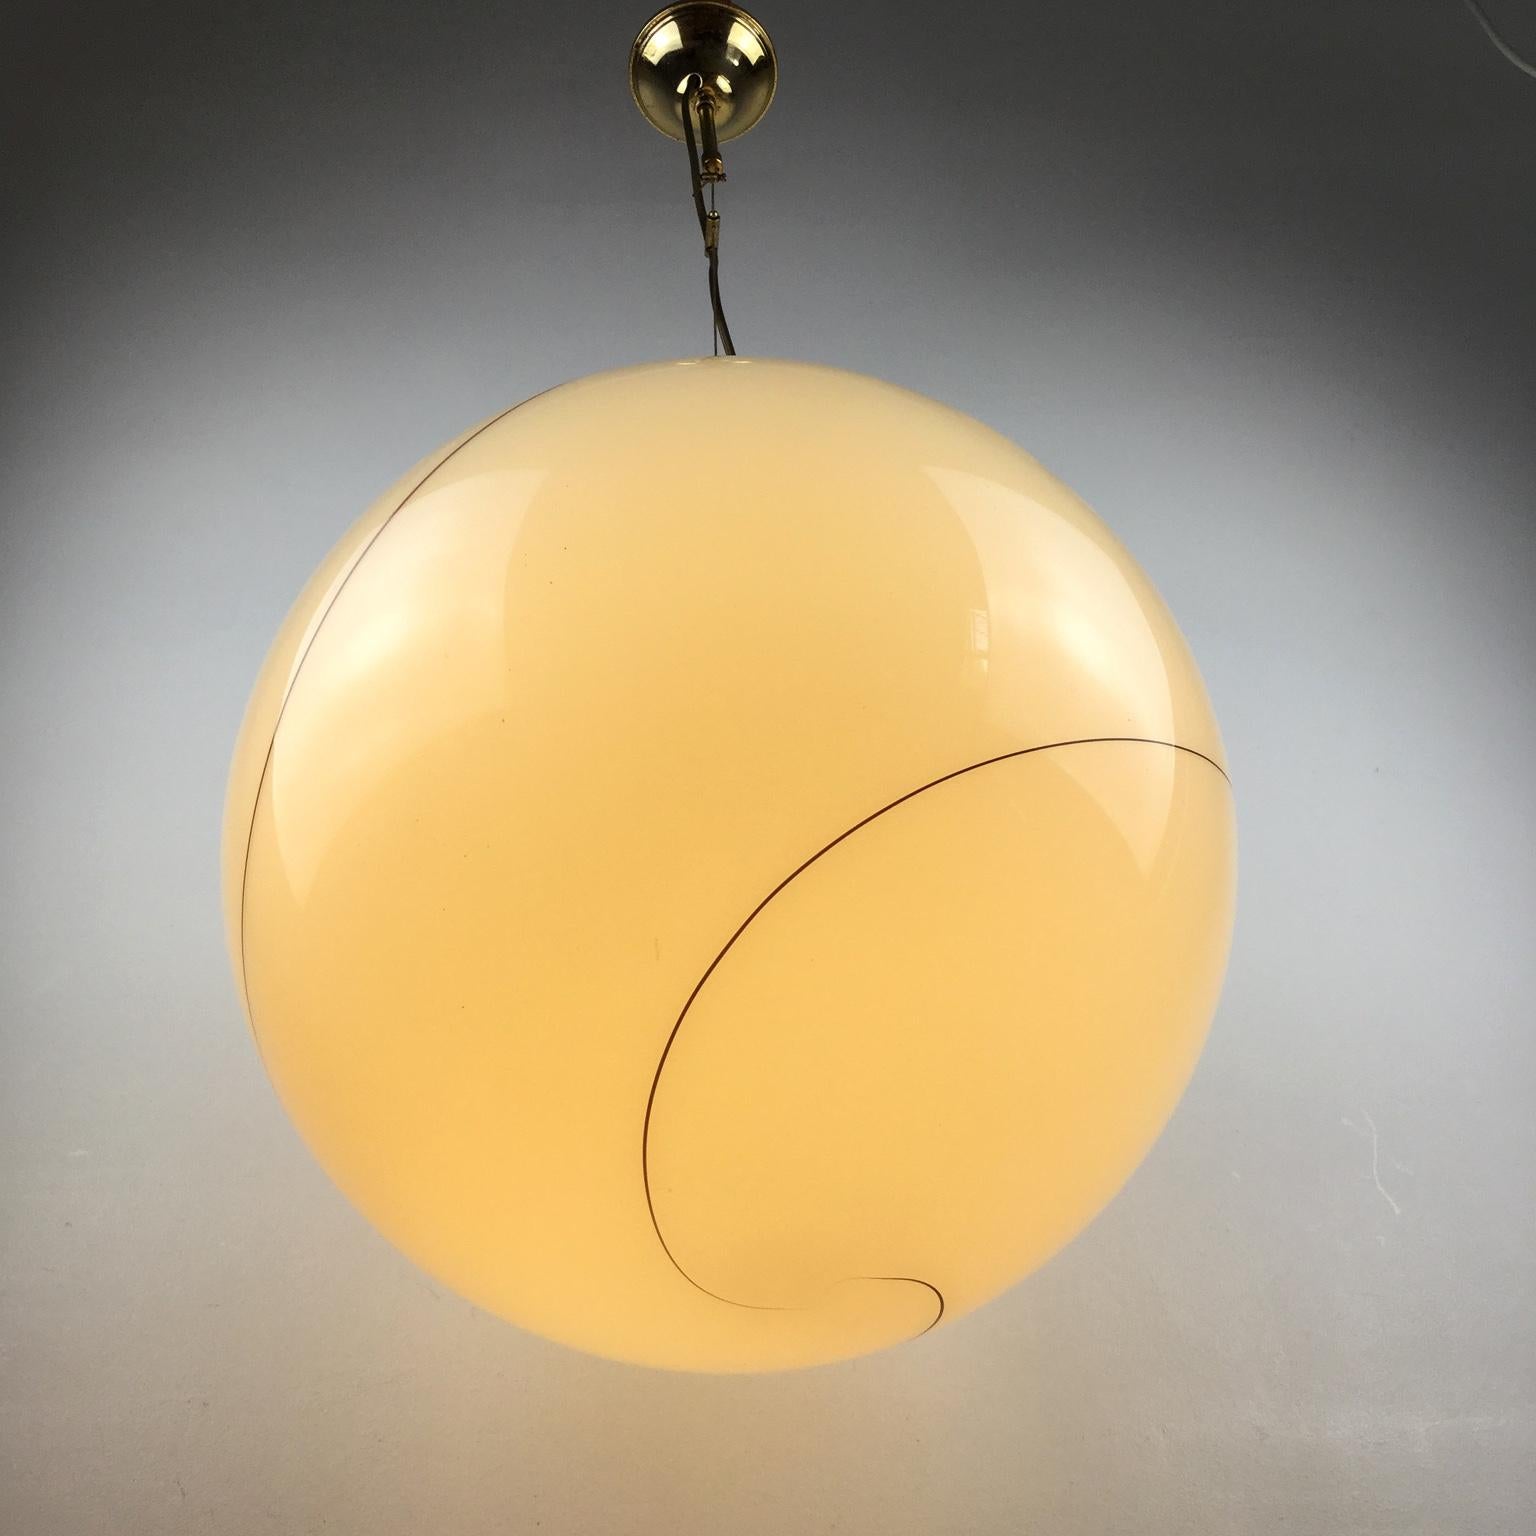 Blown Glass 1980s Murano Italian Glass Globe Pendant Lamp Attributed to Seguso Vetri d'Arte